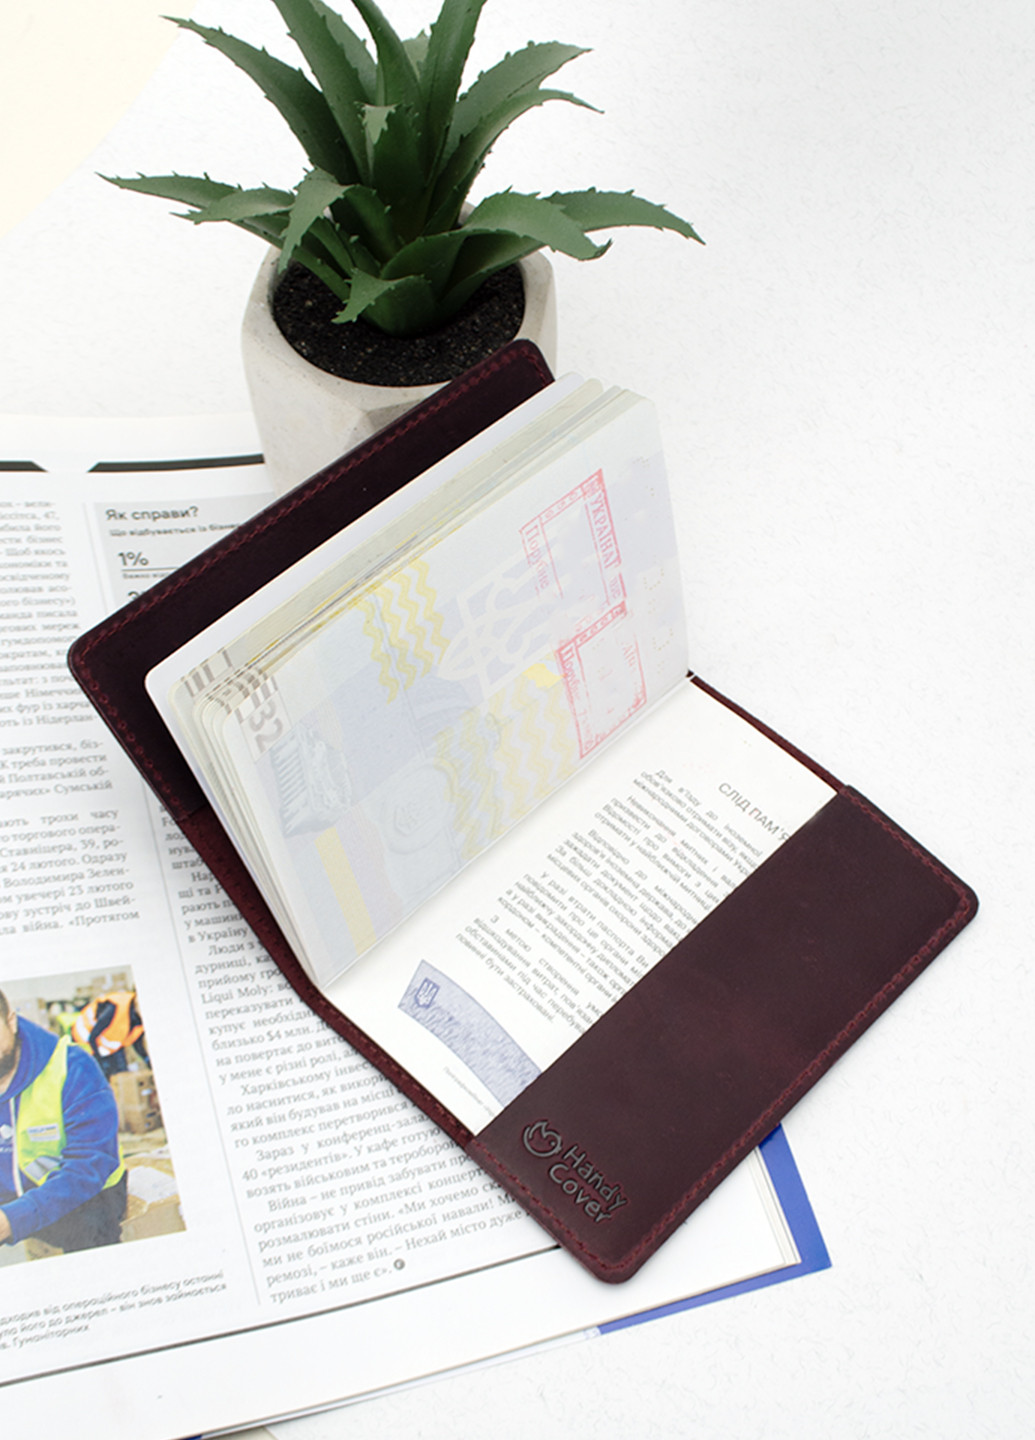 Подарочный набор №35: обложка на паспорт "Герб" + обложка на загранпаспорт "Карта" (бордовый) HandyCover (261409395)